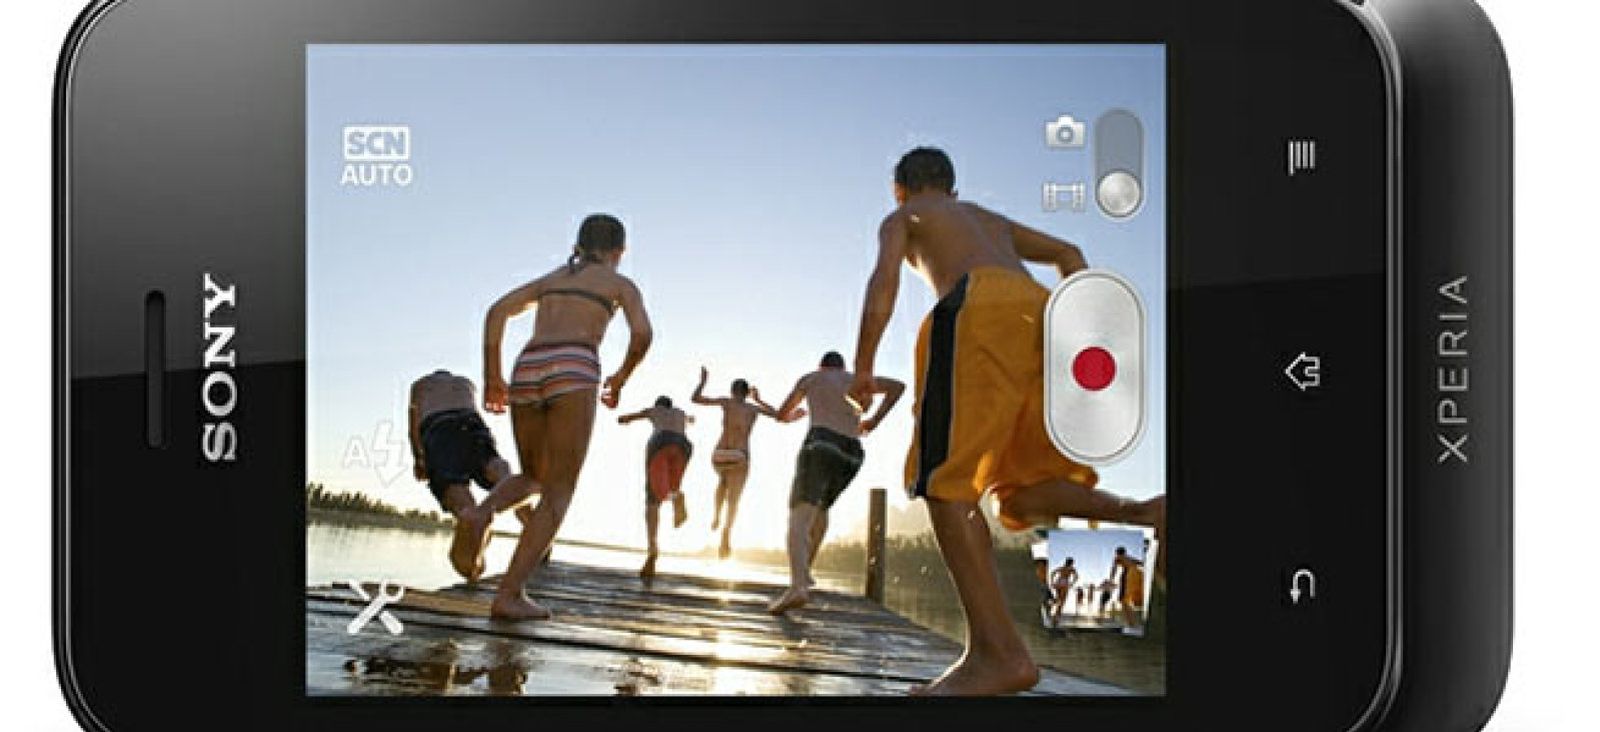 Foto: Xperia tipo, el 'smartphone' más asequible de Sony